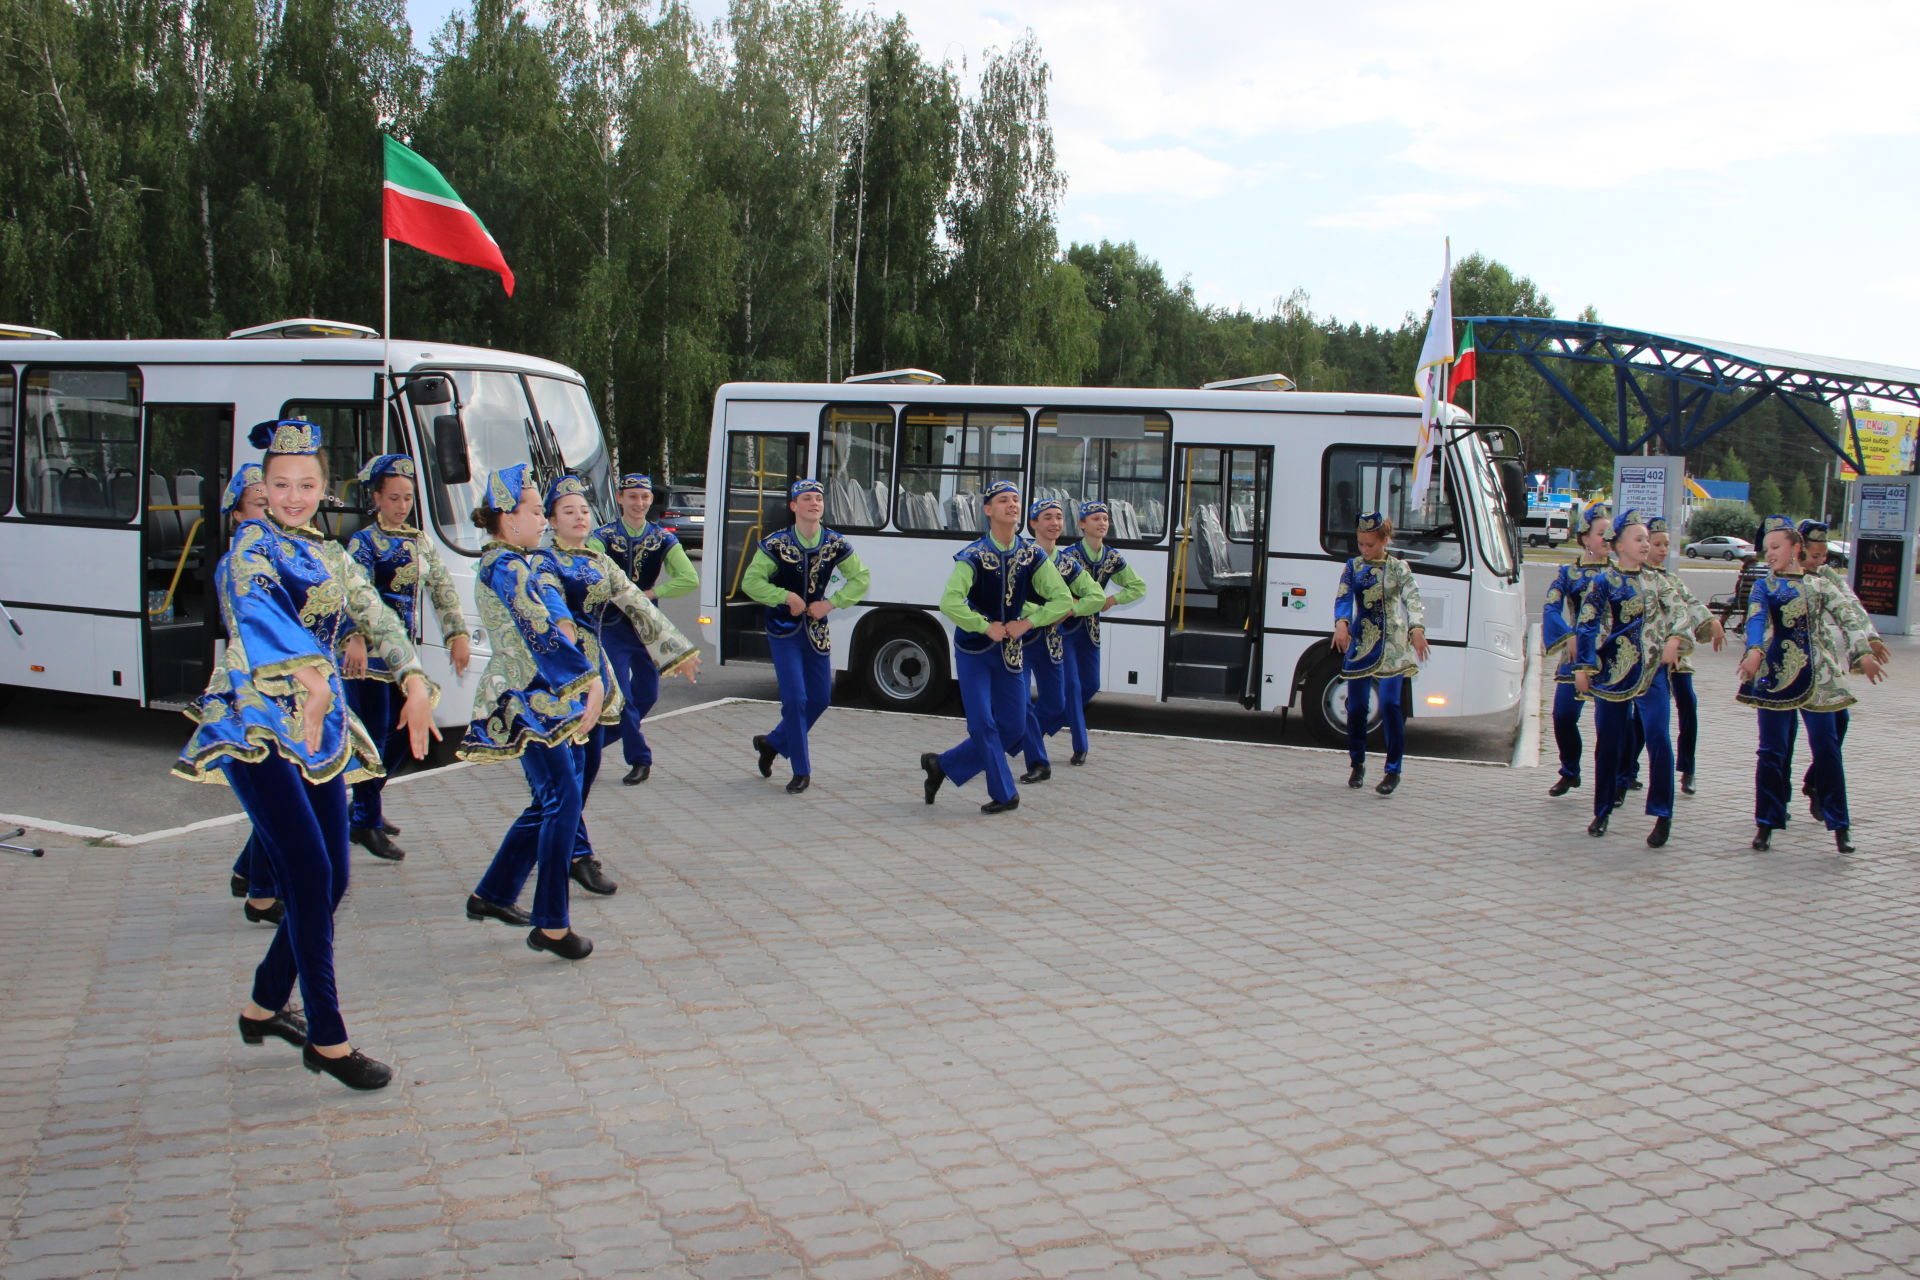 Яшел Үзән ПАТПсы дүрт яңа автобус сатып алган, алар Яшел Үзән - Васильево маршрутында хезмәт күрсәтәчәк